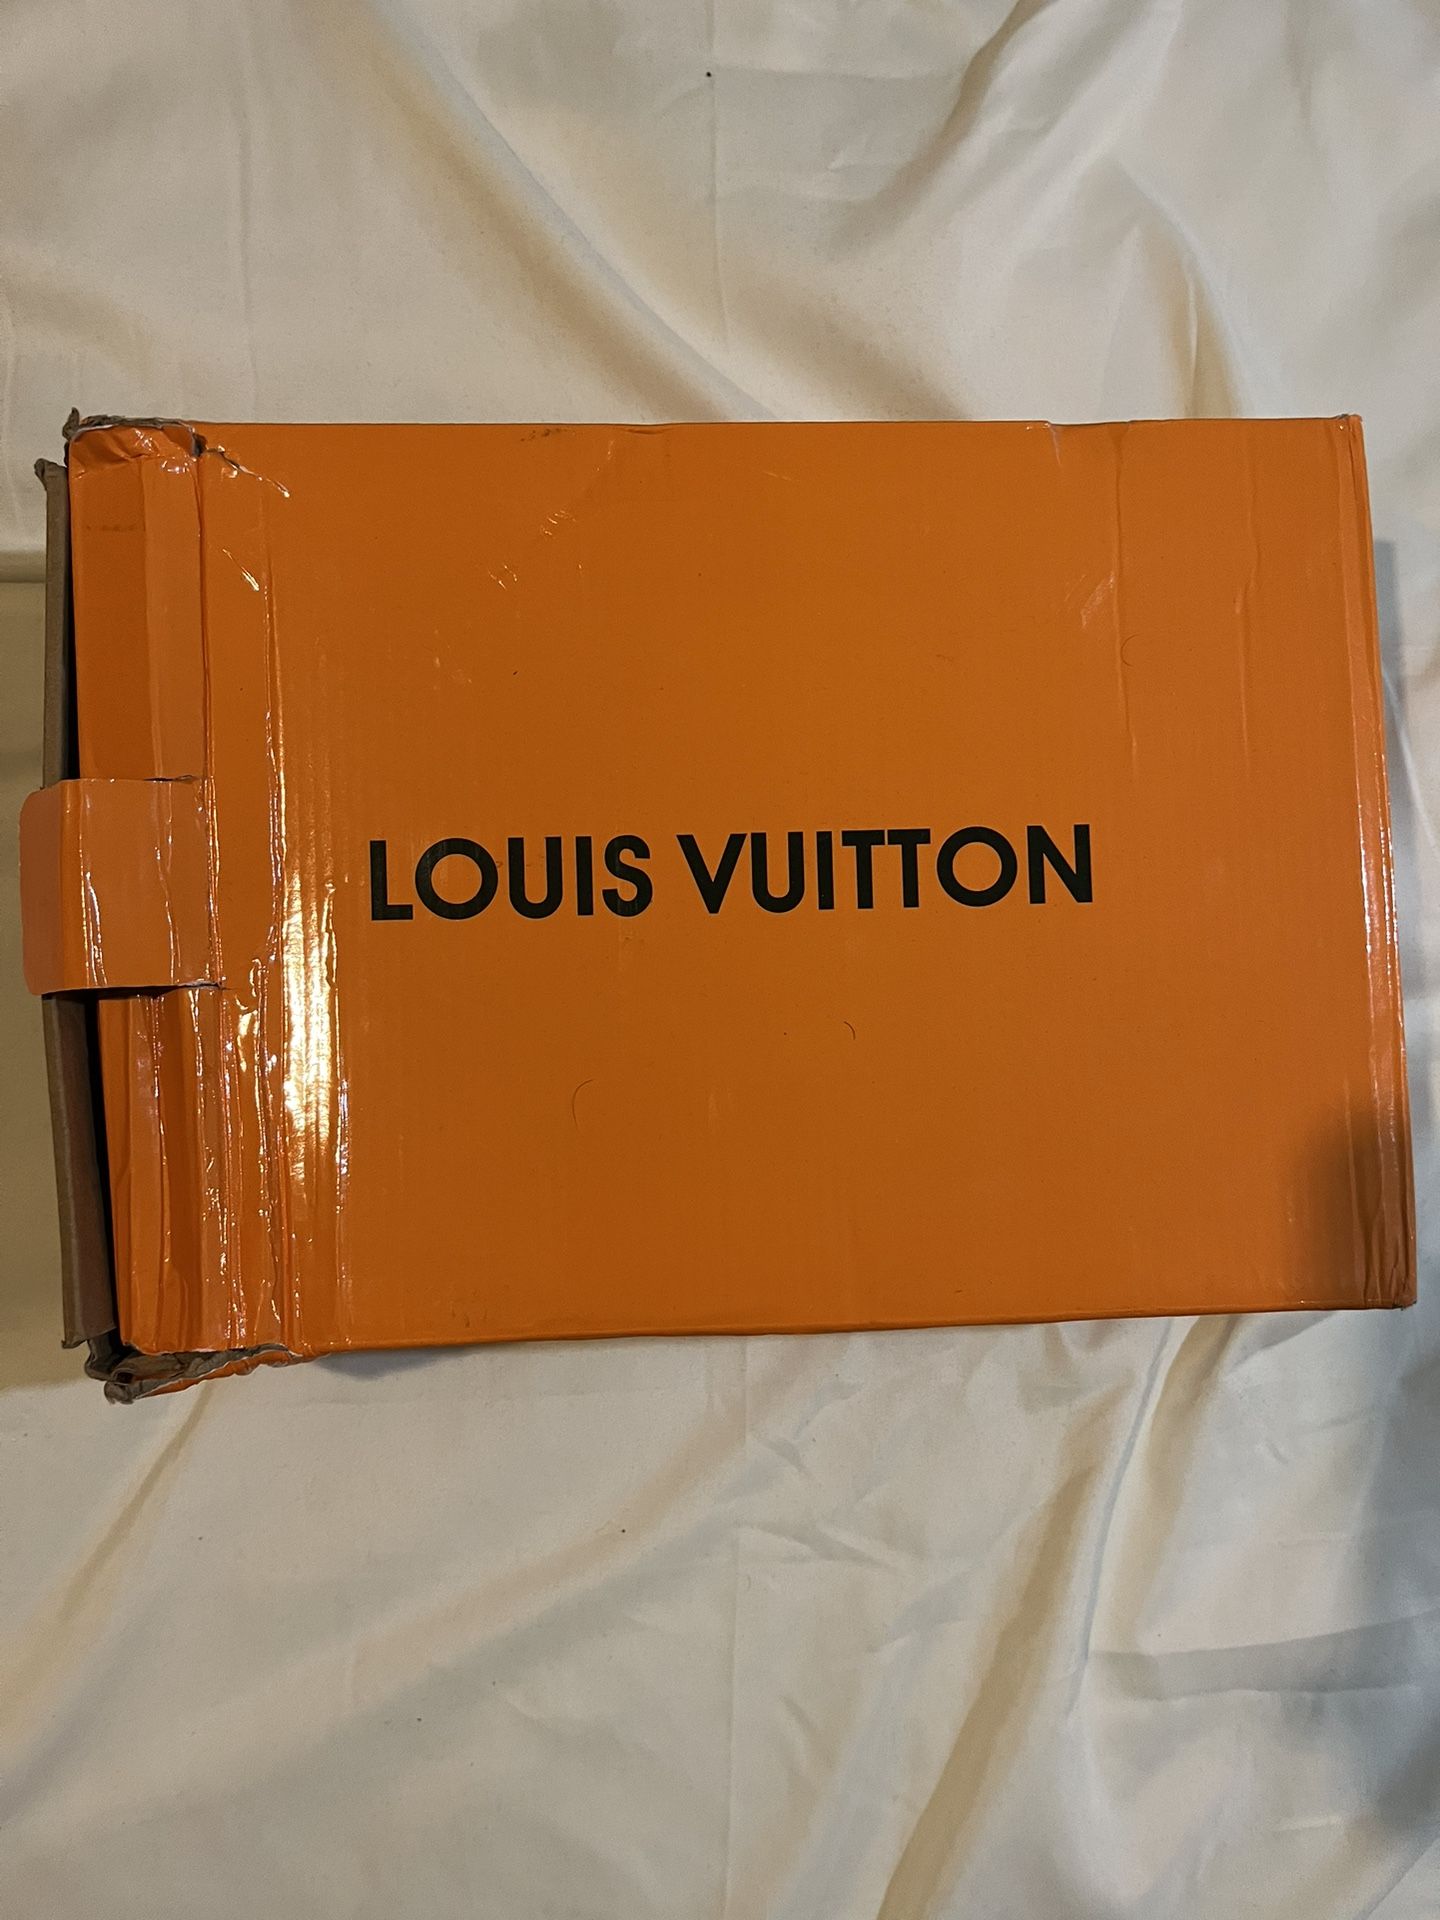 Louis Vuitton Trainer Black Signature EU Size 44 US Size 11